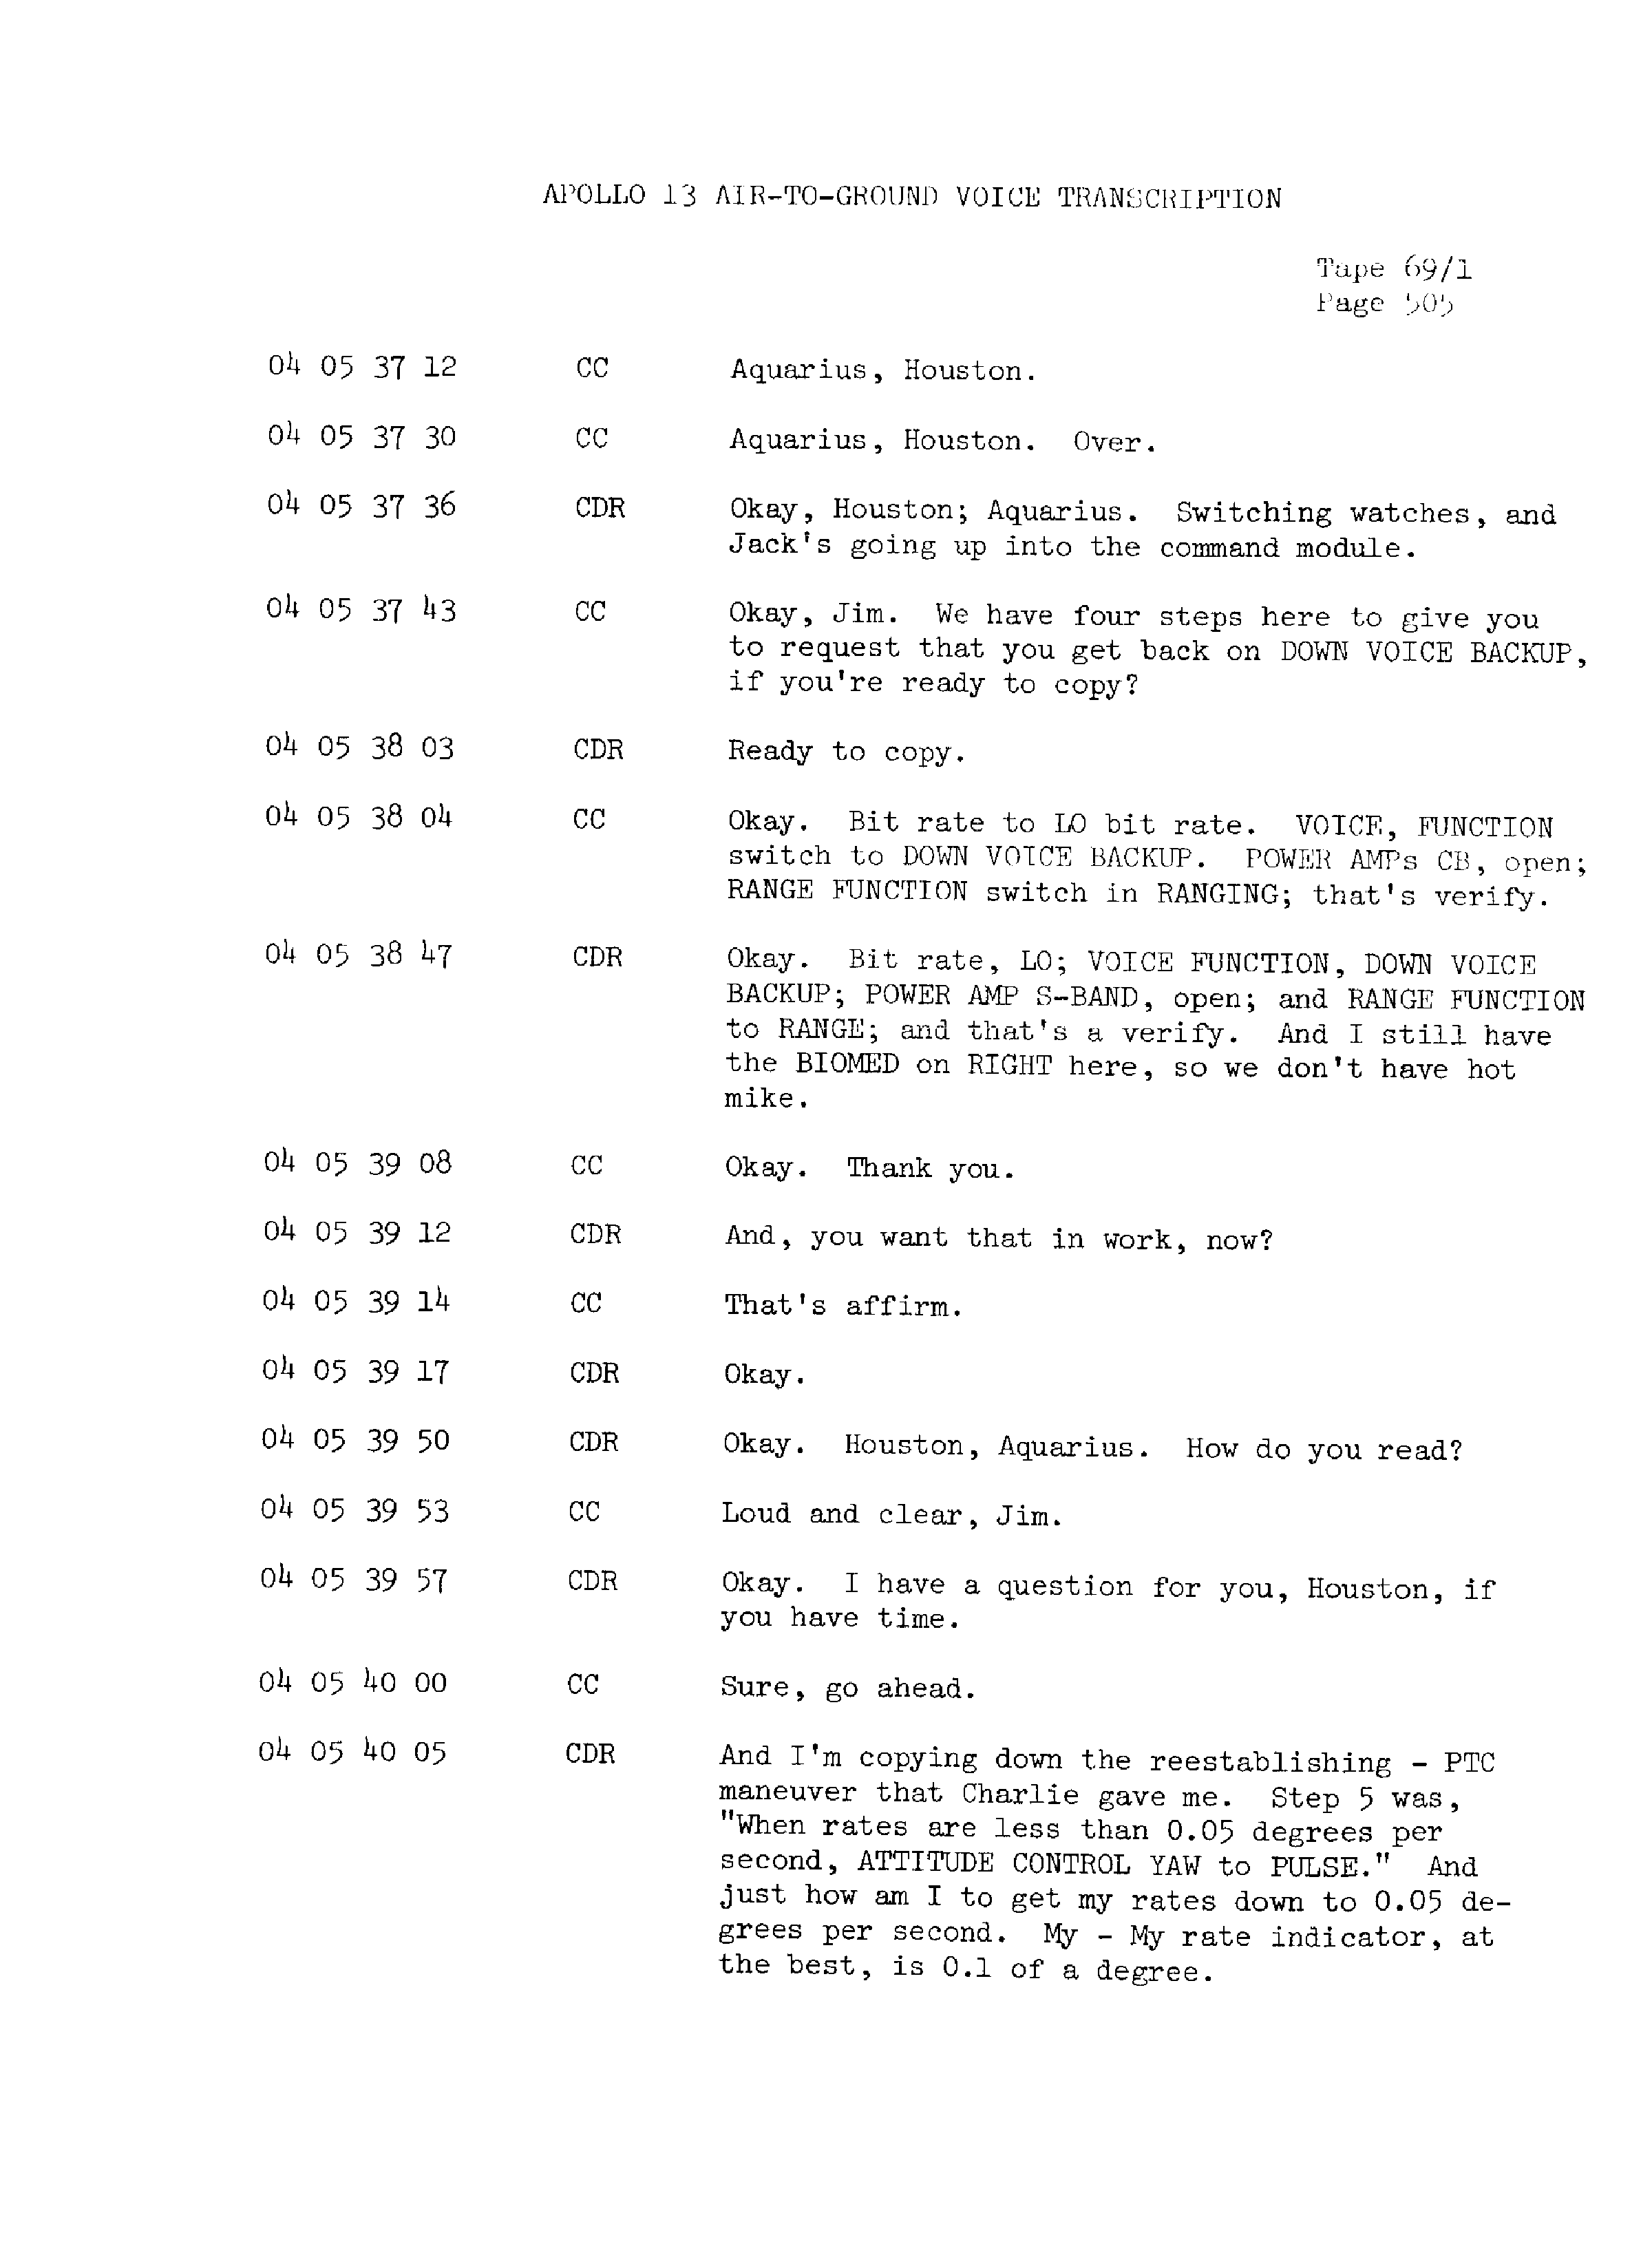 Page 512 of Apollo 13’s original transcript